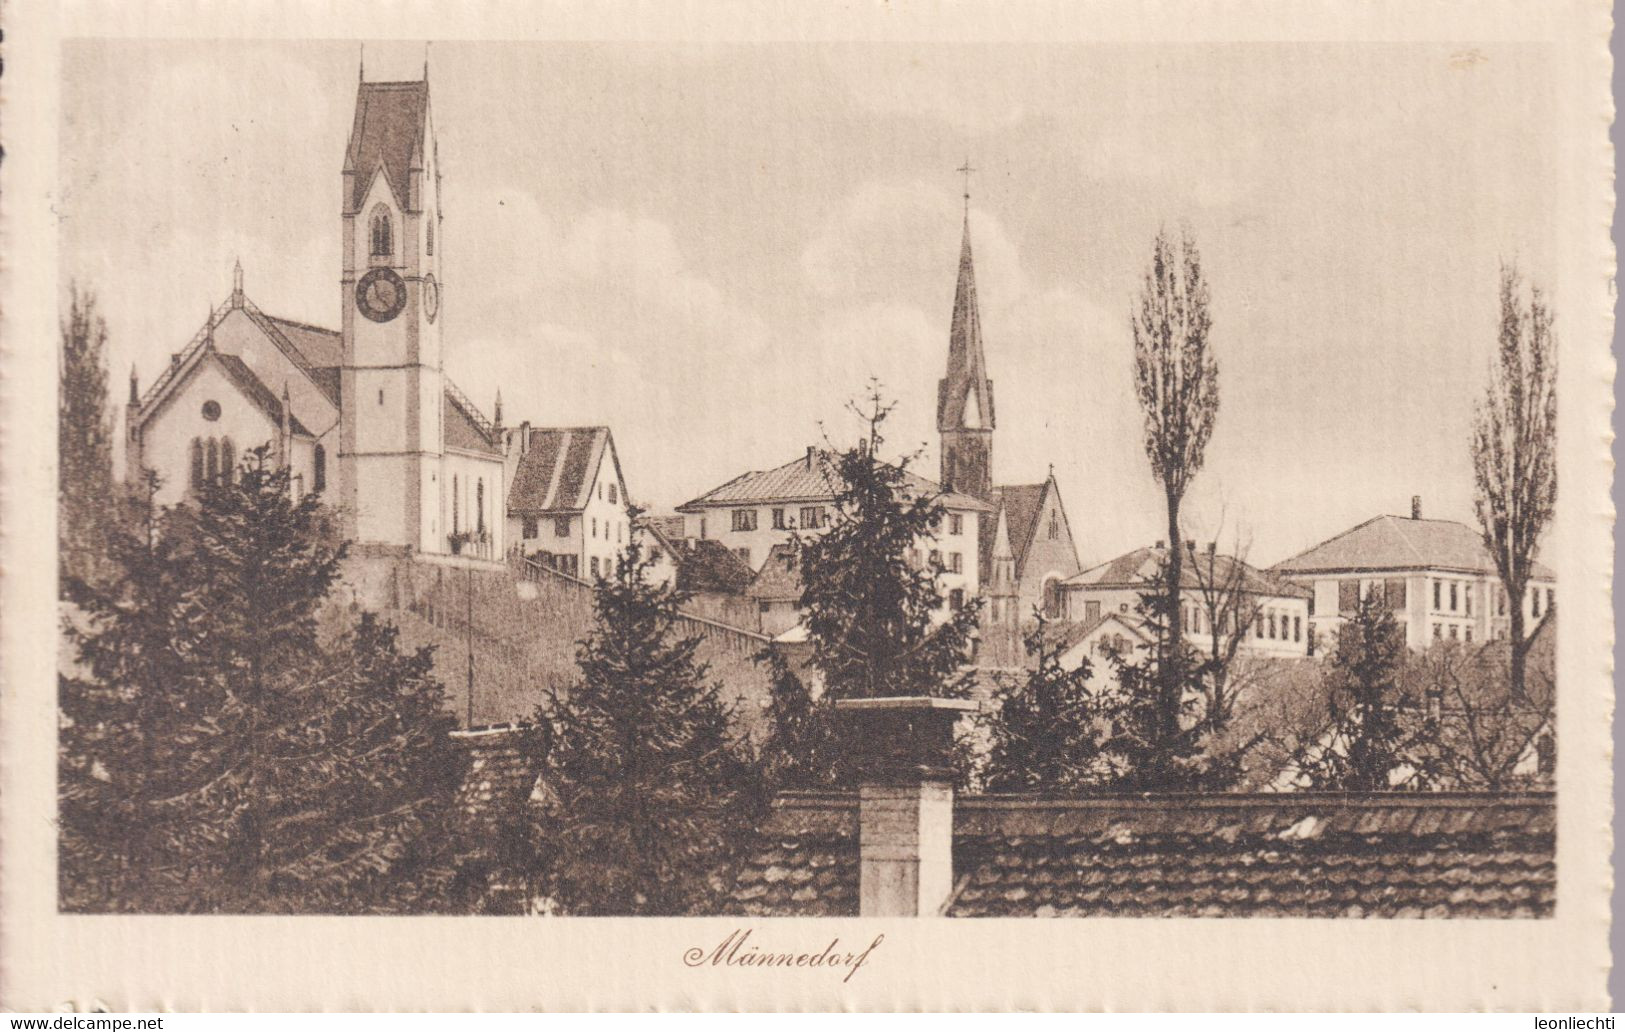 AK: 1919  Männedorf, Gelaufen - Männedorf